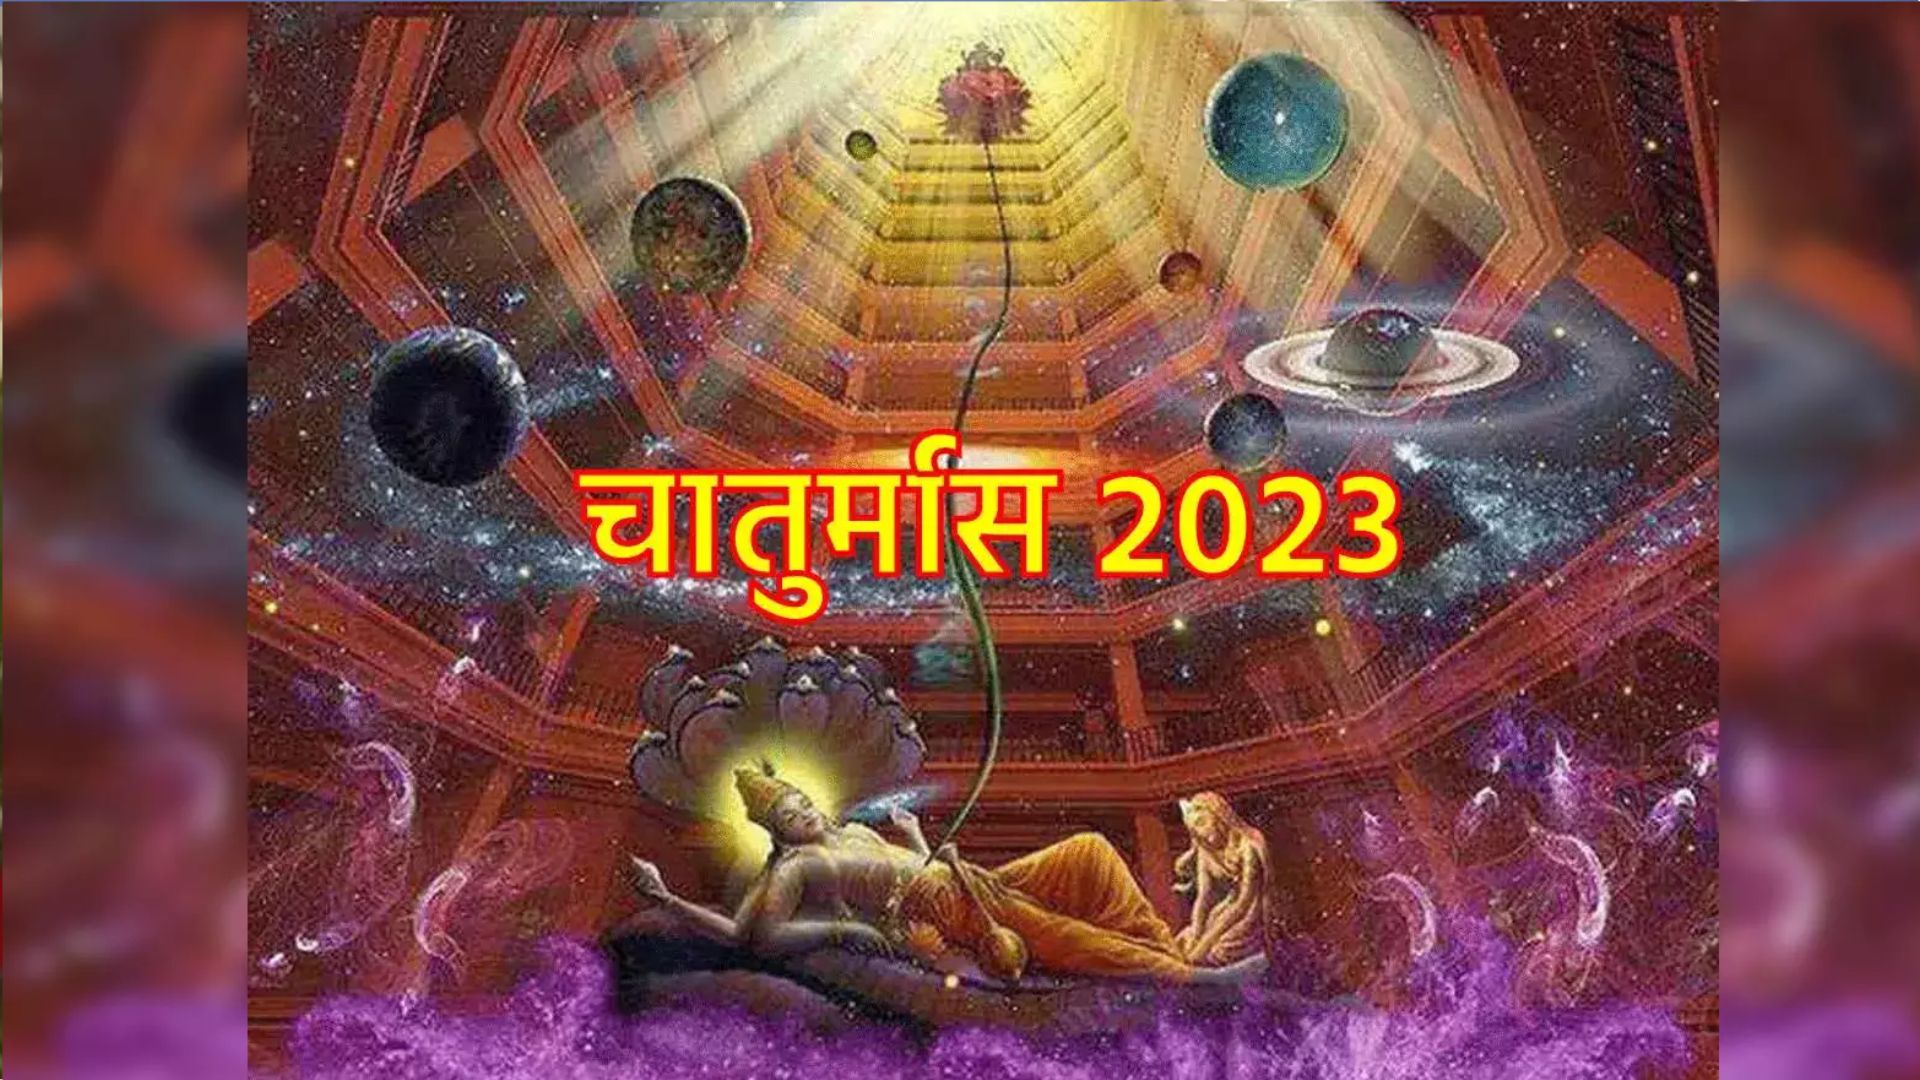 Chaturmas 2023: इस दिन से होगी चतुर्मास की शुरुआत, भूलकर भी नहीं करें ये शुभ काम